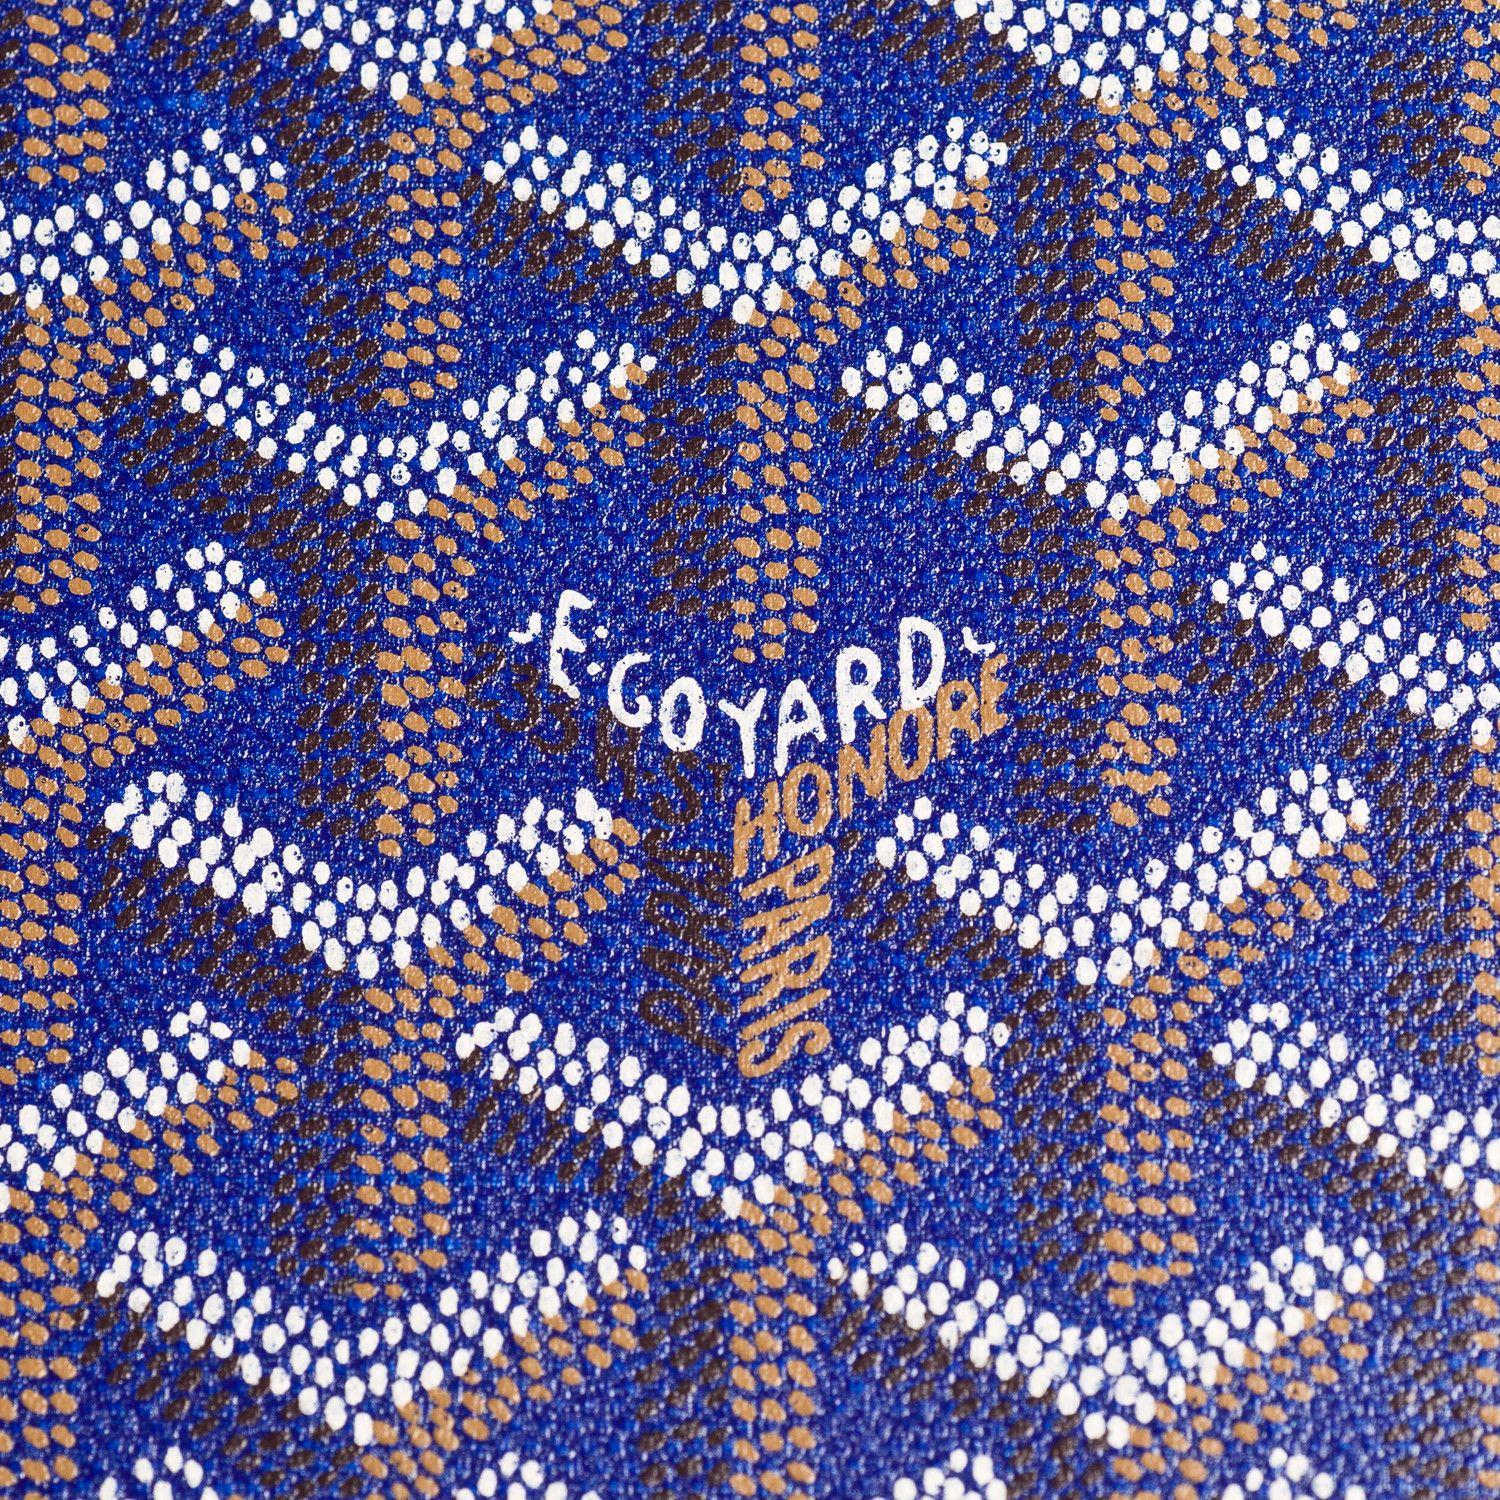 Blue Goyard Logo - Goyard Colors